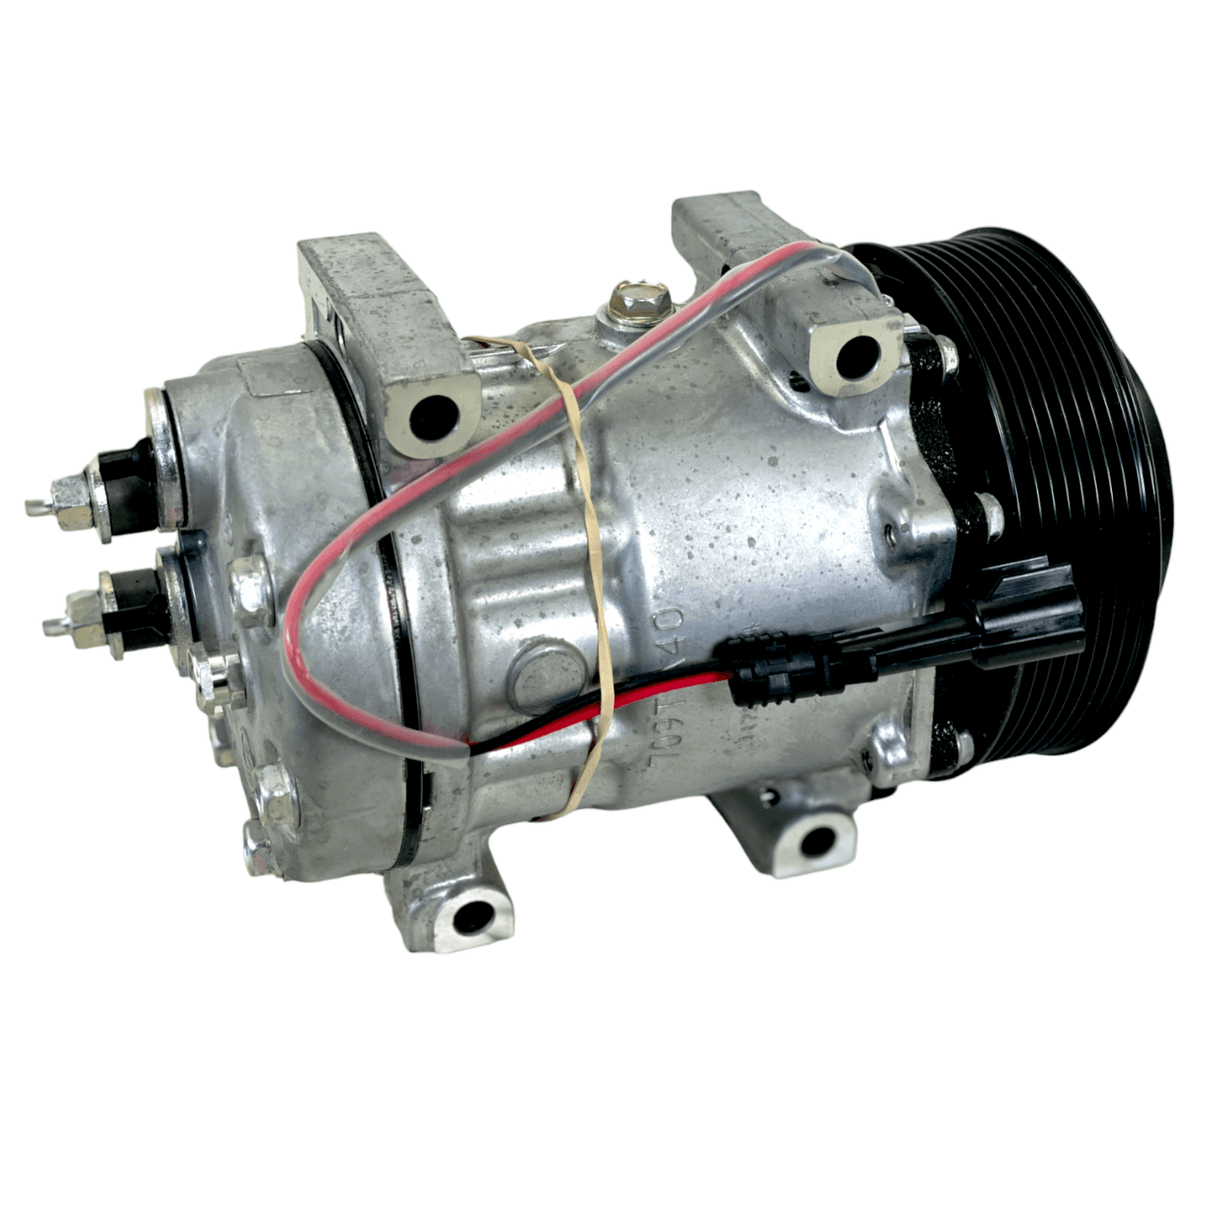 330-2399 Genuine Sanden AC Compressor 12V for Kenworth Peterbilt.